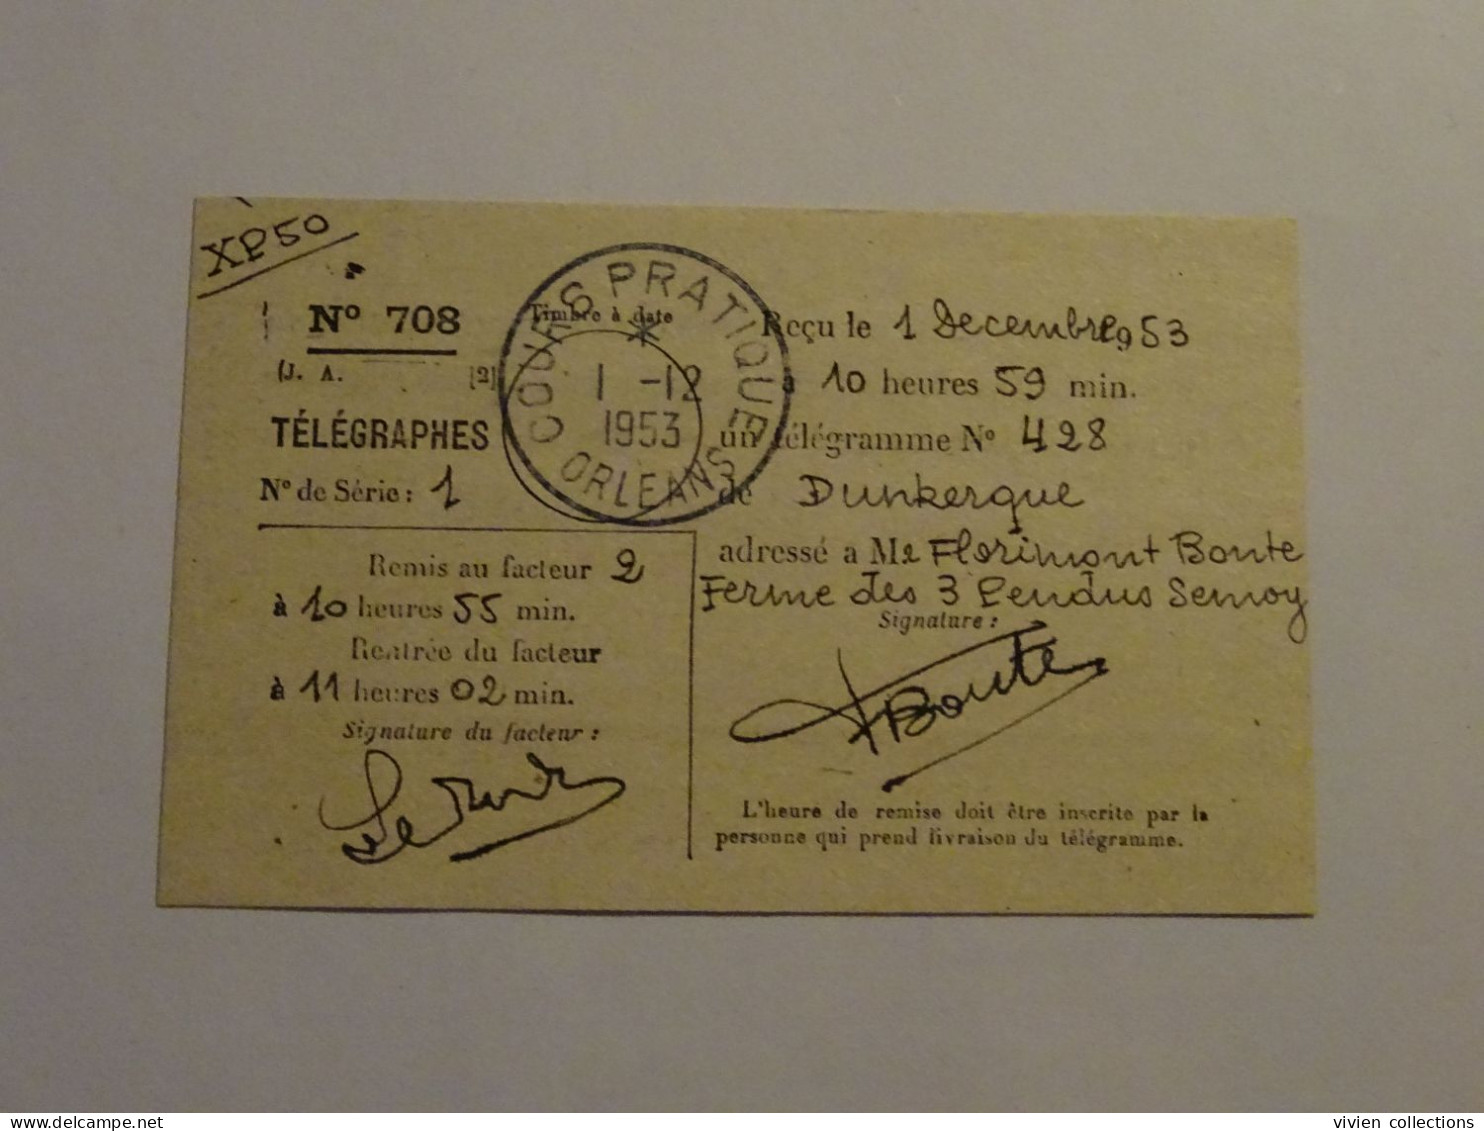 France cours pratique instruction Orléans 1953 télégramme Semoy ferme des 3 pendus rôle liquidation dépenses Dunkerque